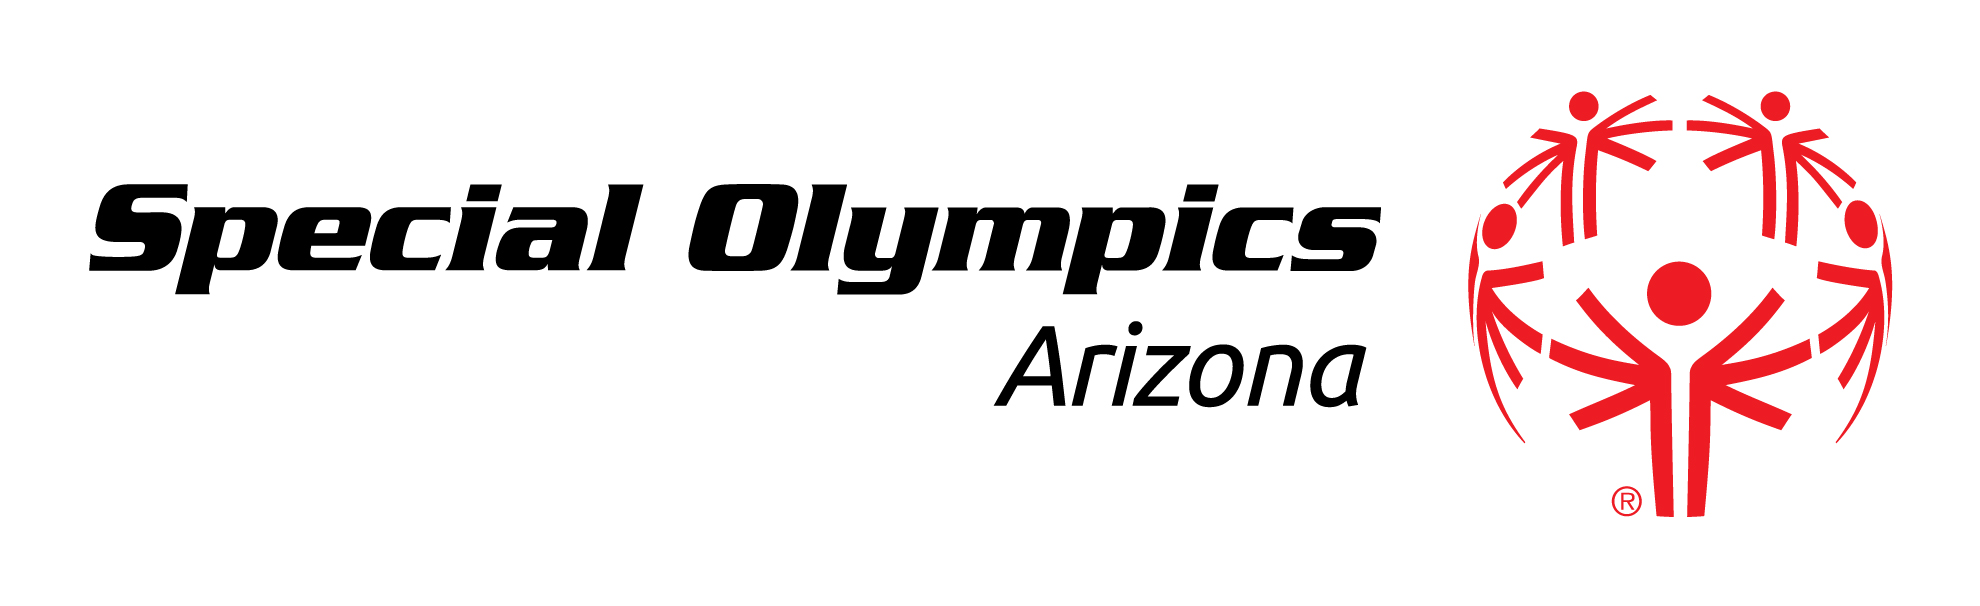 Special Olympics Arizona